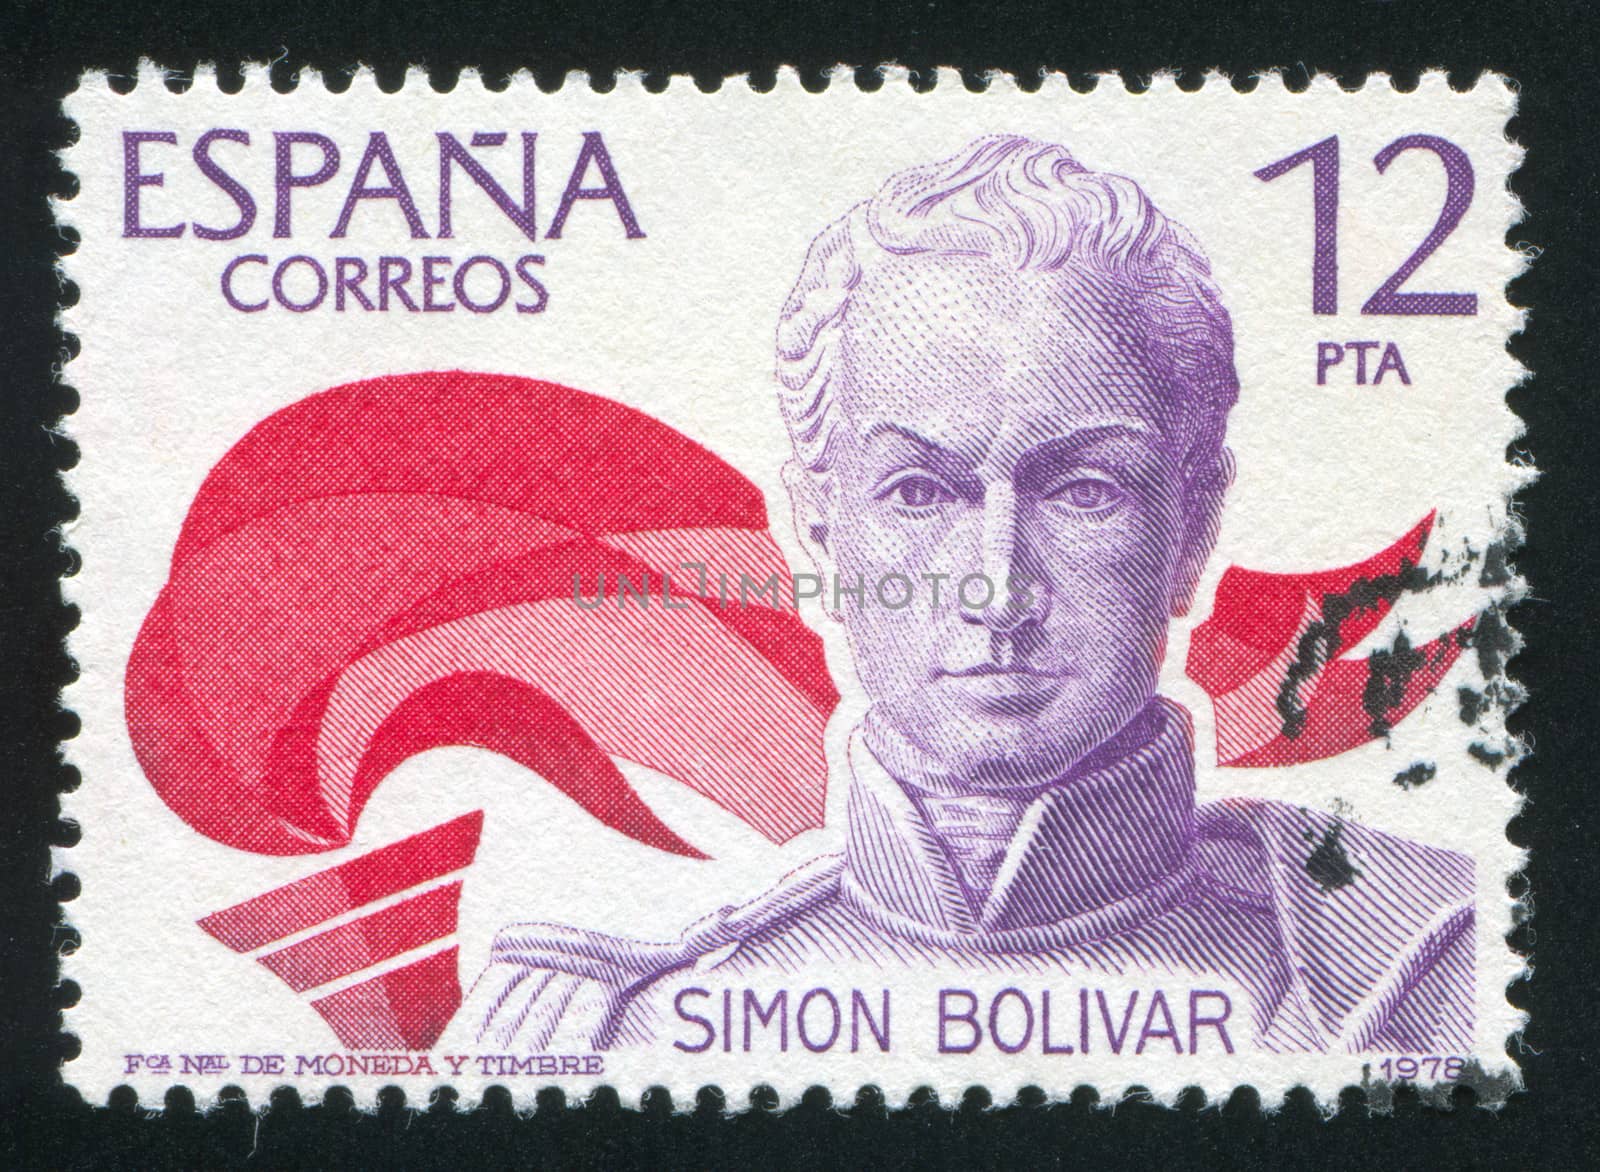 Portrait of Simon Bolivar by rook